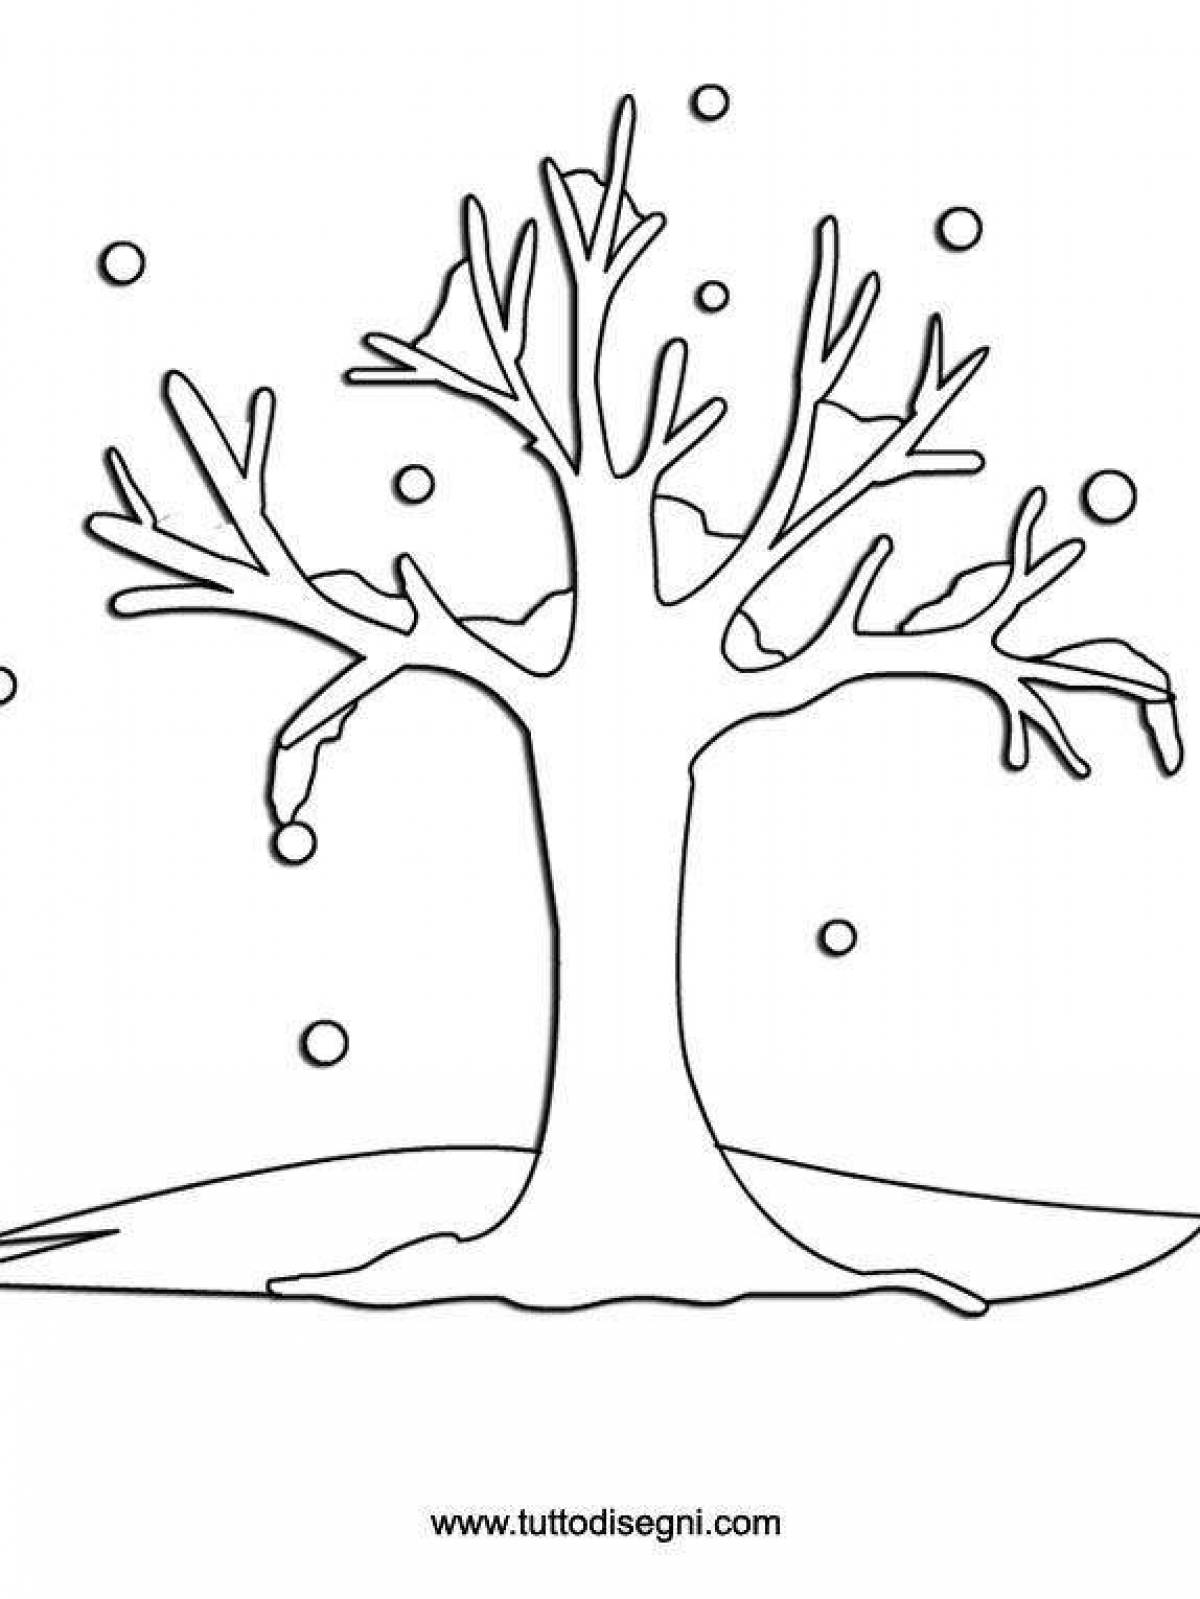 Зимнее дерево раскраска для детей